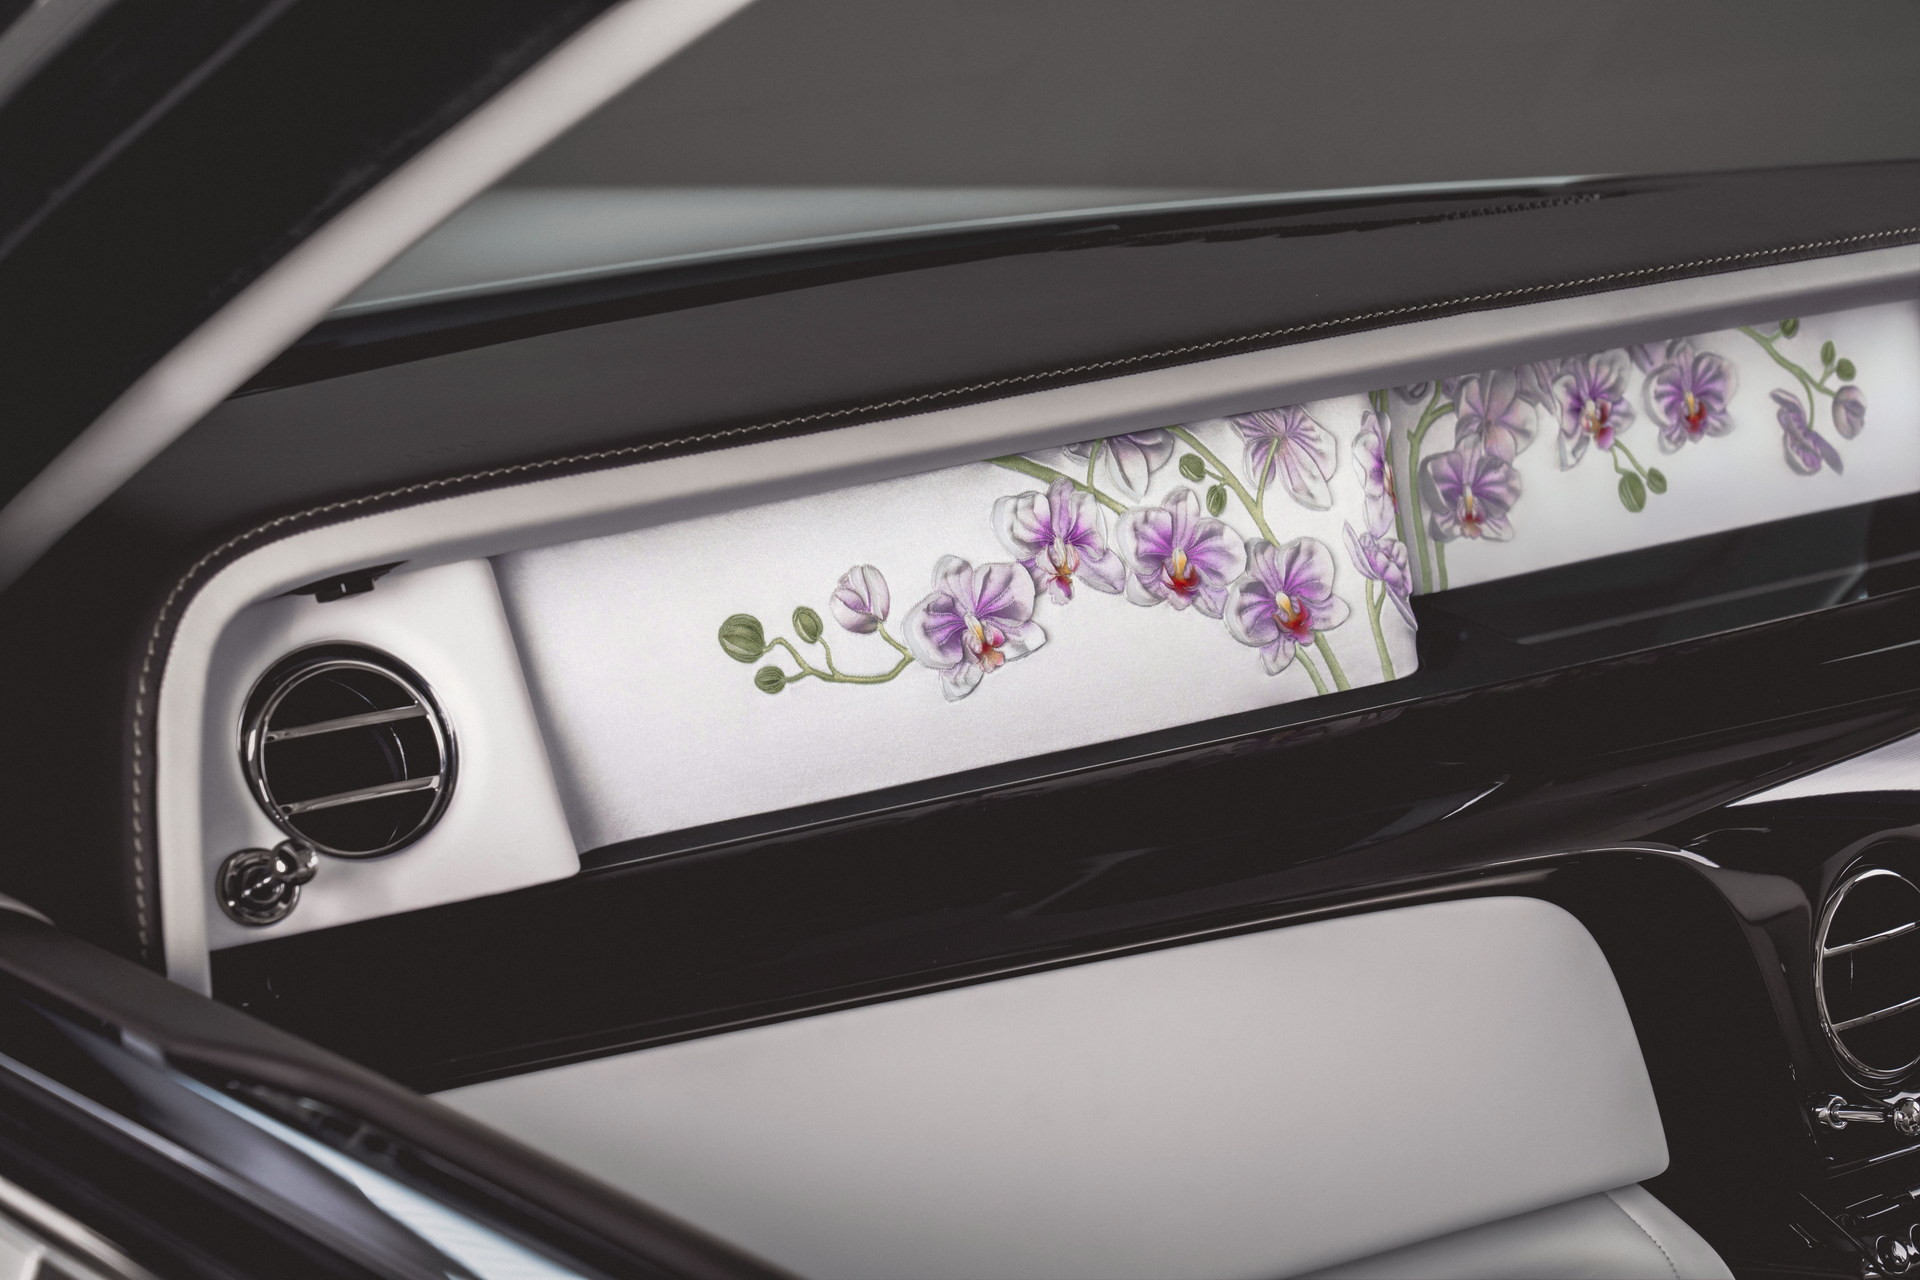 Mặt táp lô của Rolls-Royce Phantom Orchid